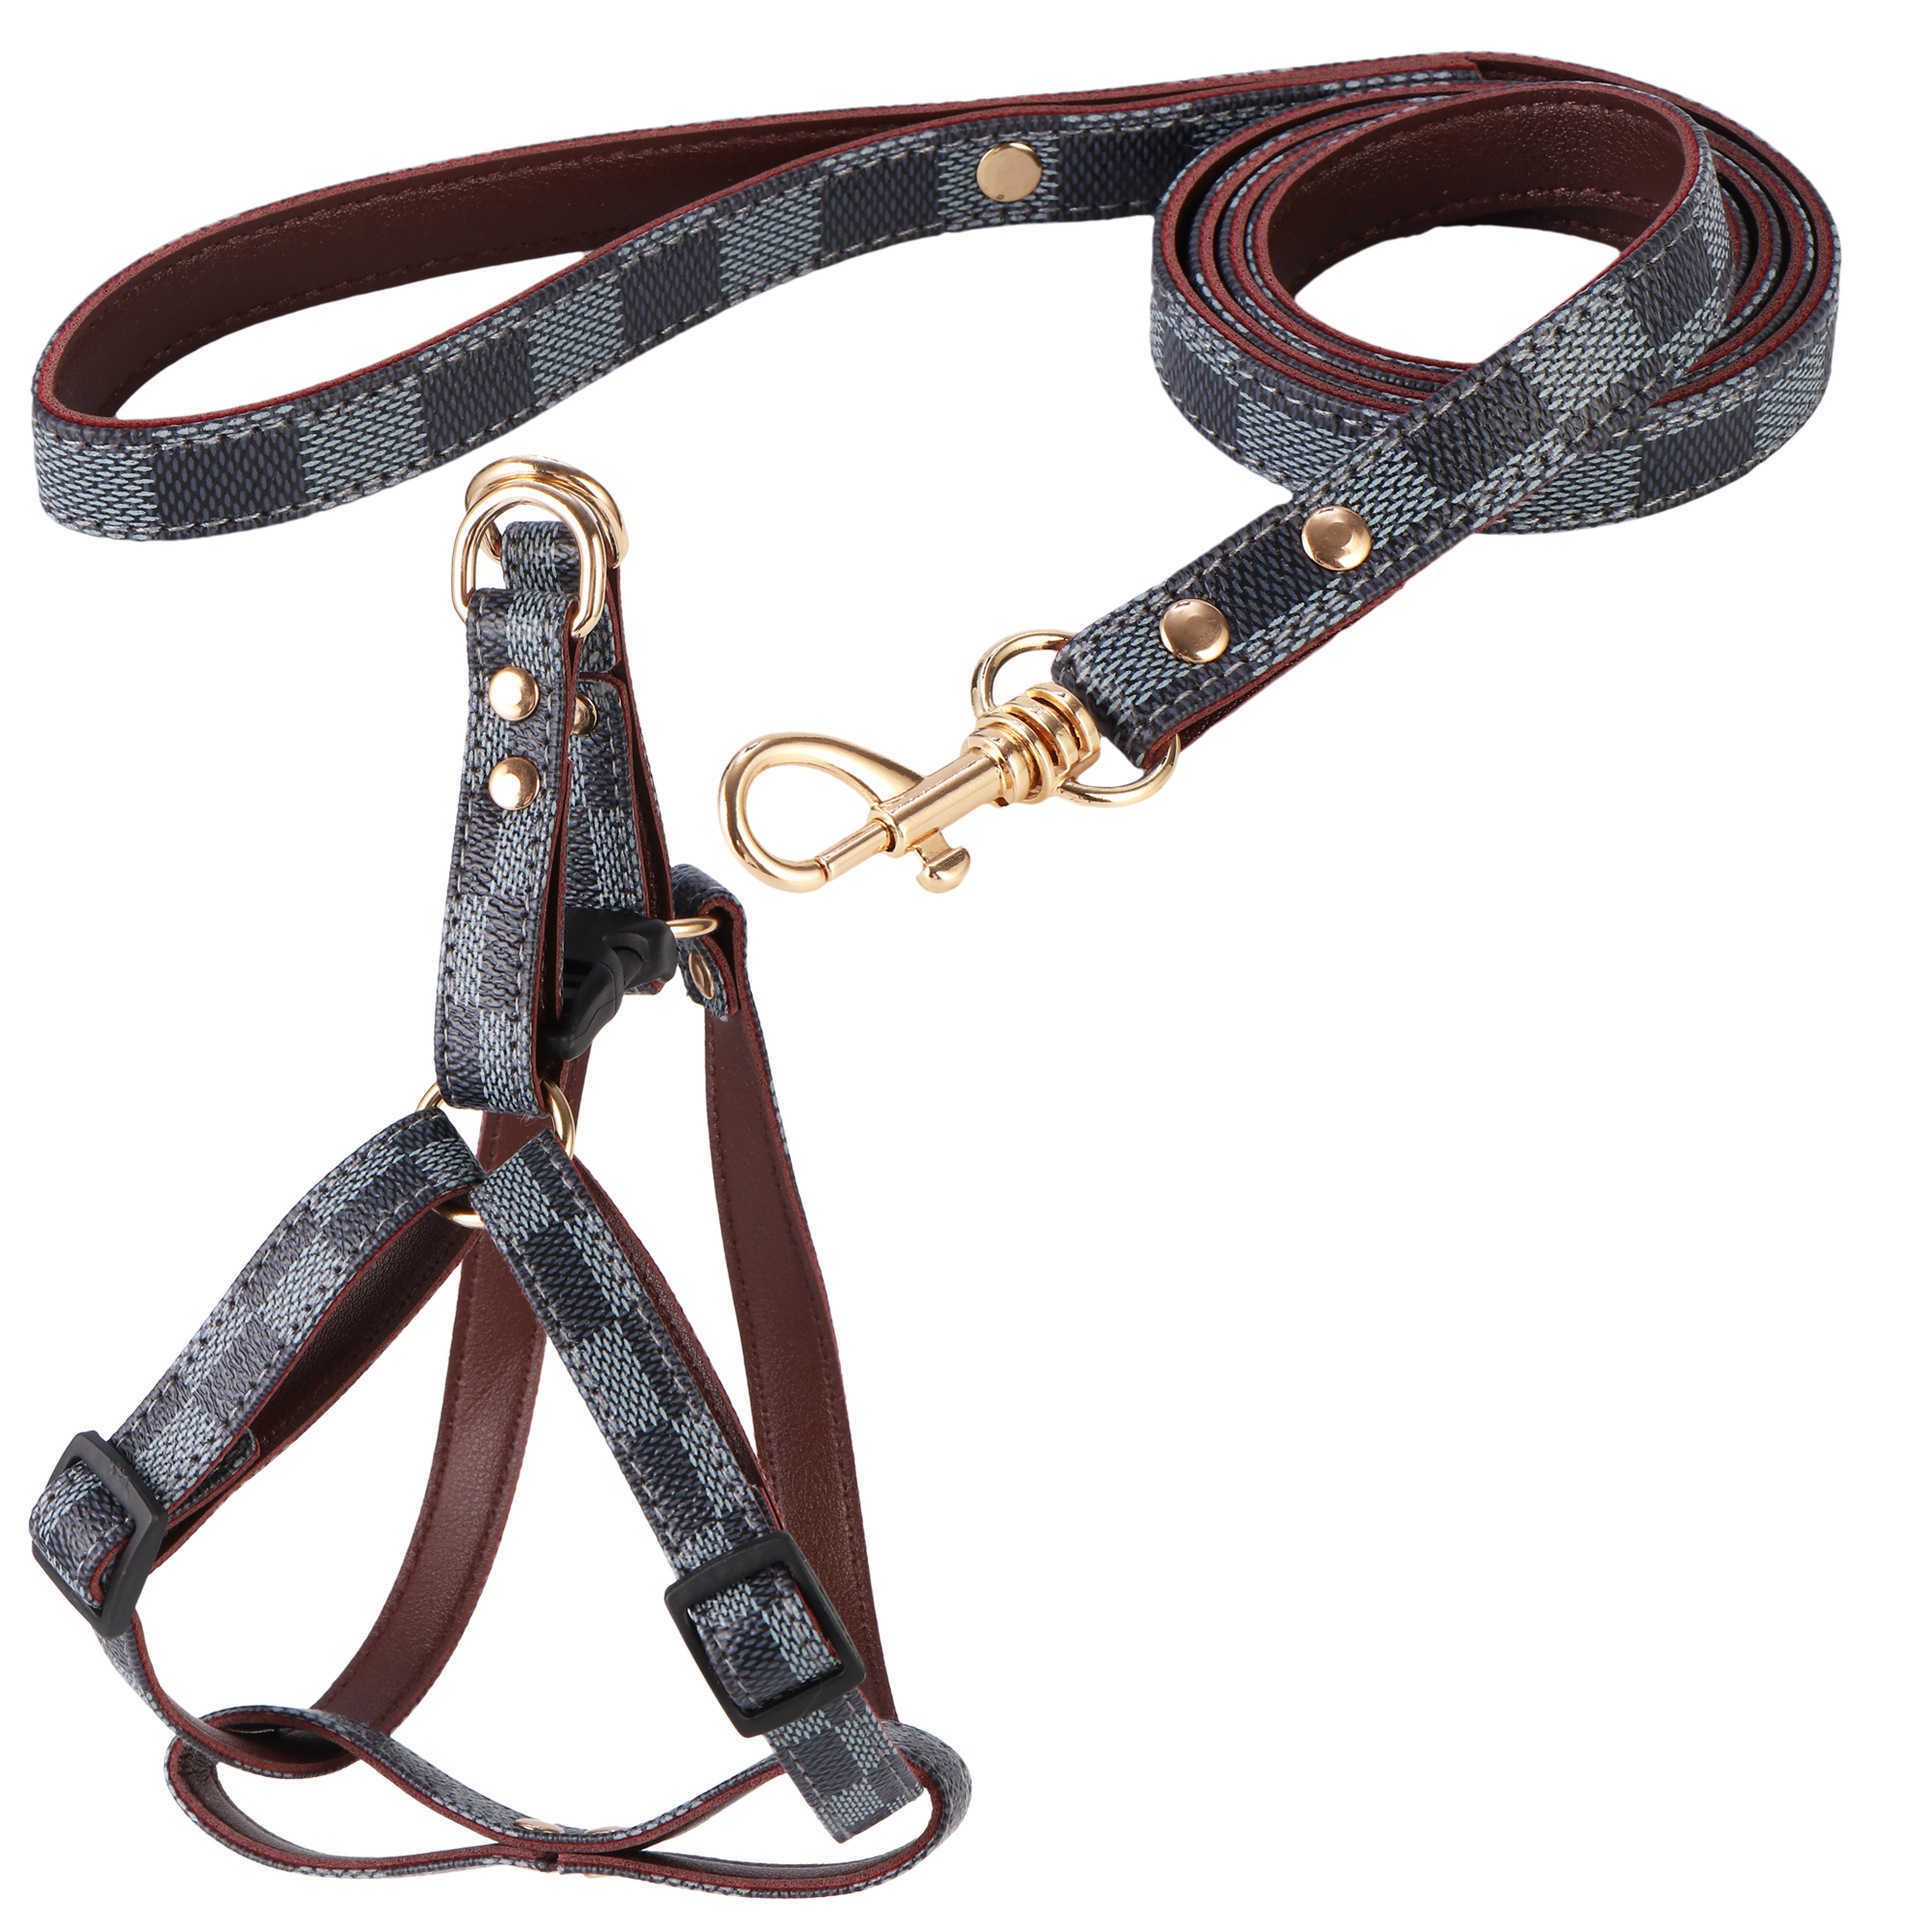 #3 Harness+leash